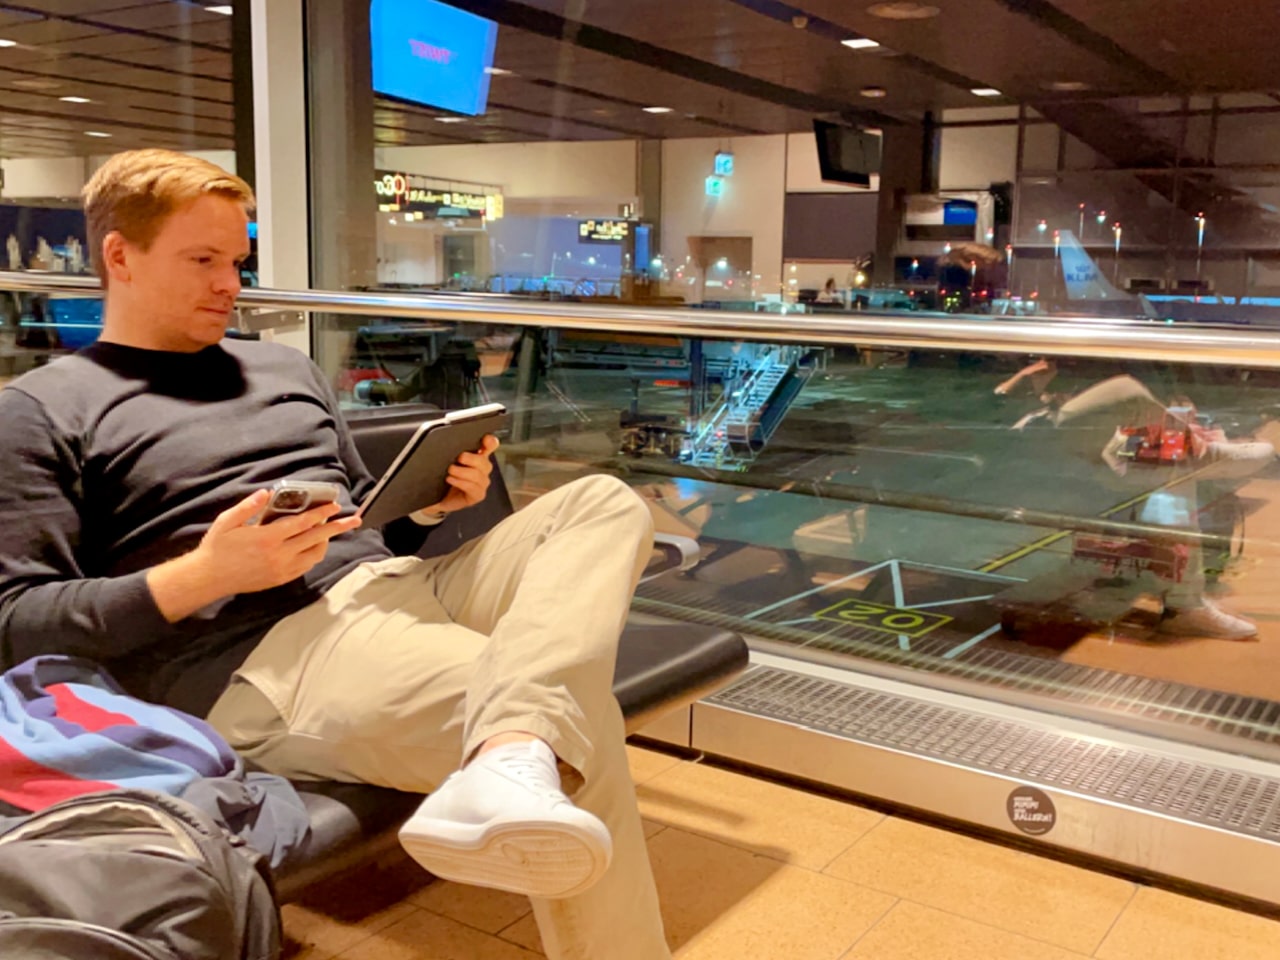 Persone che fissano gli schermi: trascorriamo una quantità insalubre di tempo davanti agli schermi, anche in vacanza e in viaggio. Foto: Sascha Tegtmeyer